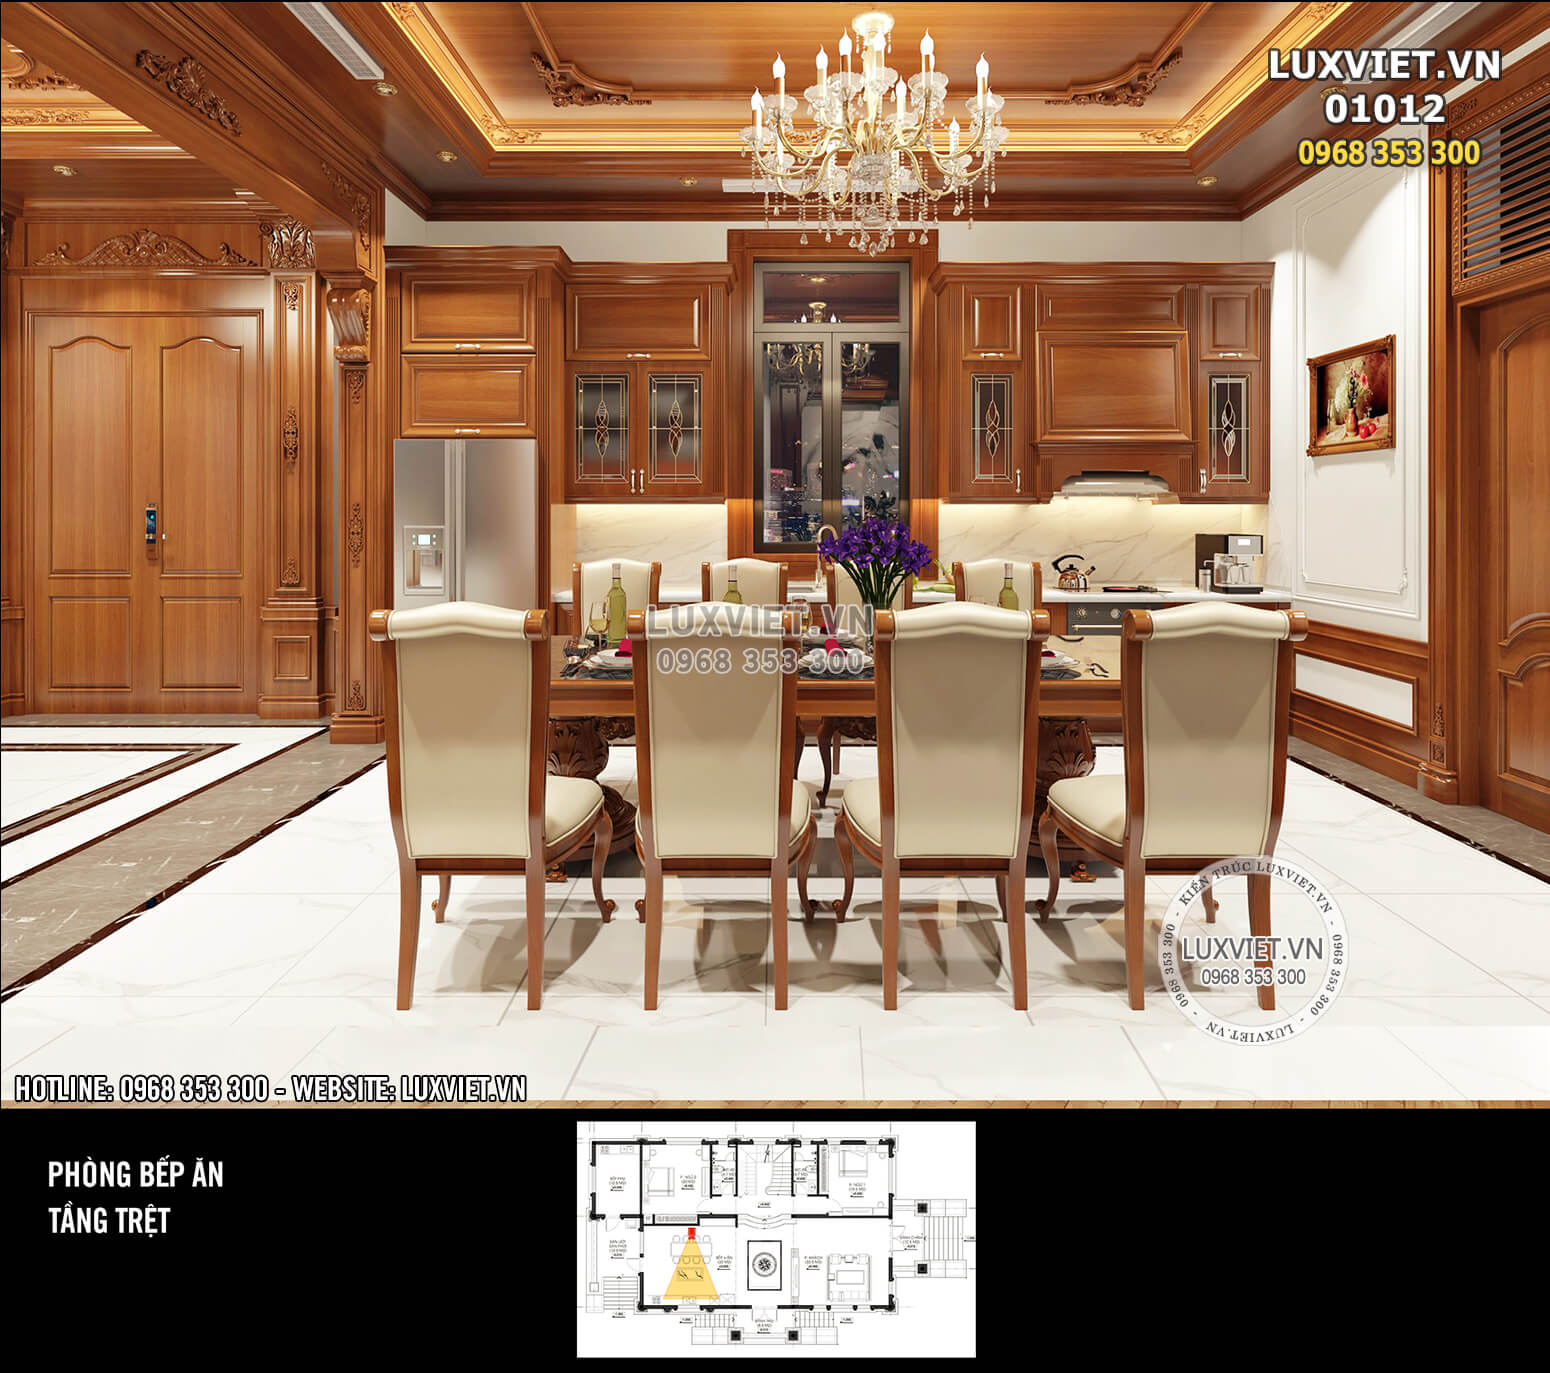 Hình ảnh: Khu vực bếp nấu được thiết kế theo kiểu chữ I với tủ bếp trên dưới được làm bằng gỗ cao cấp